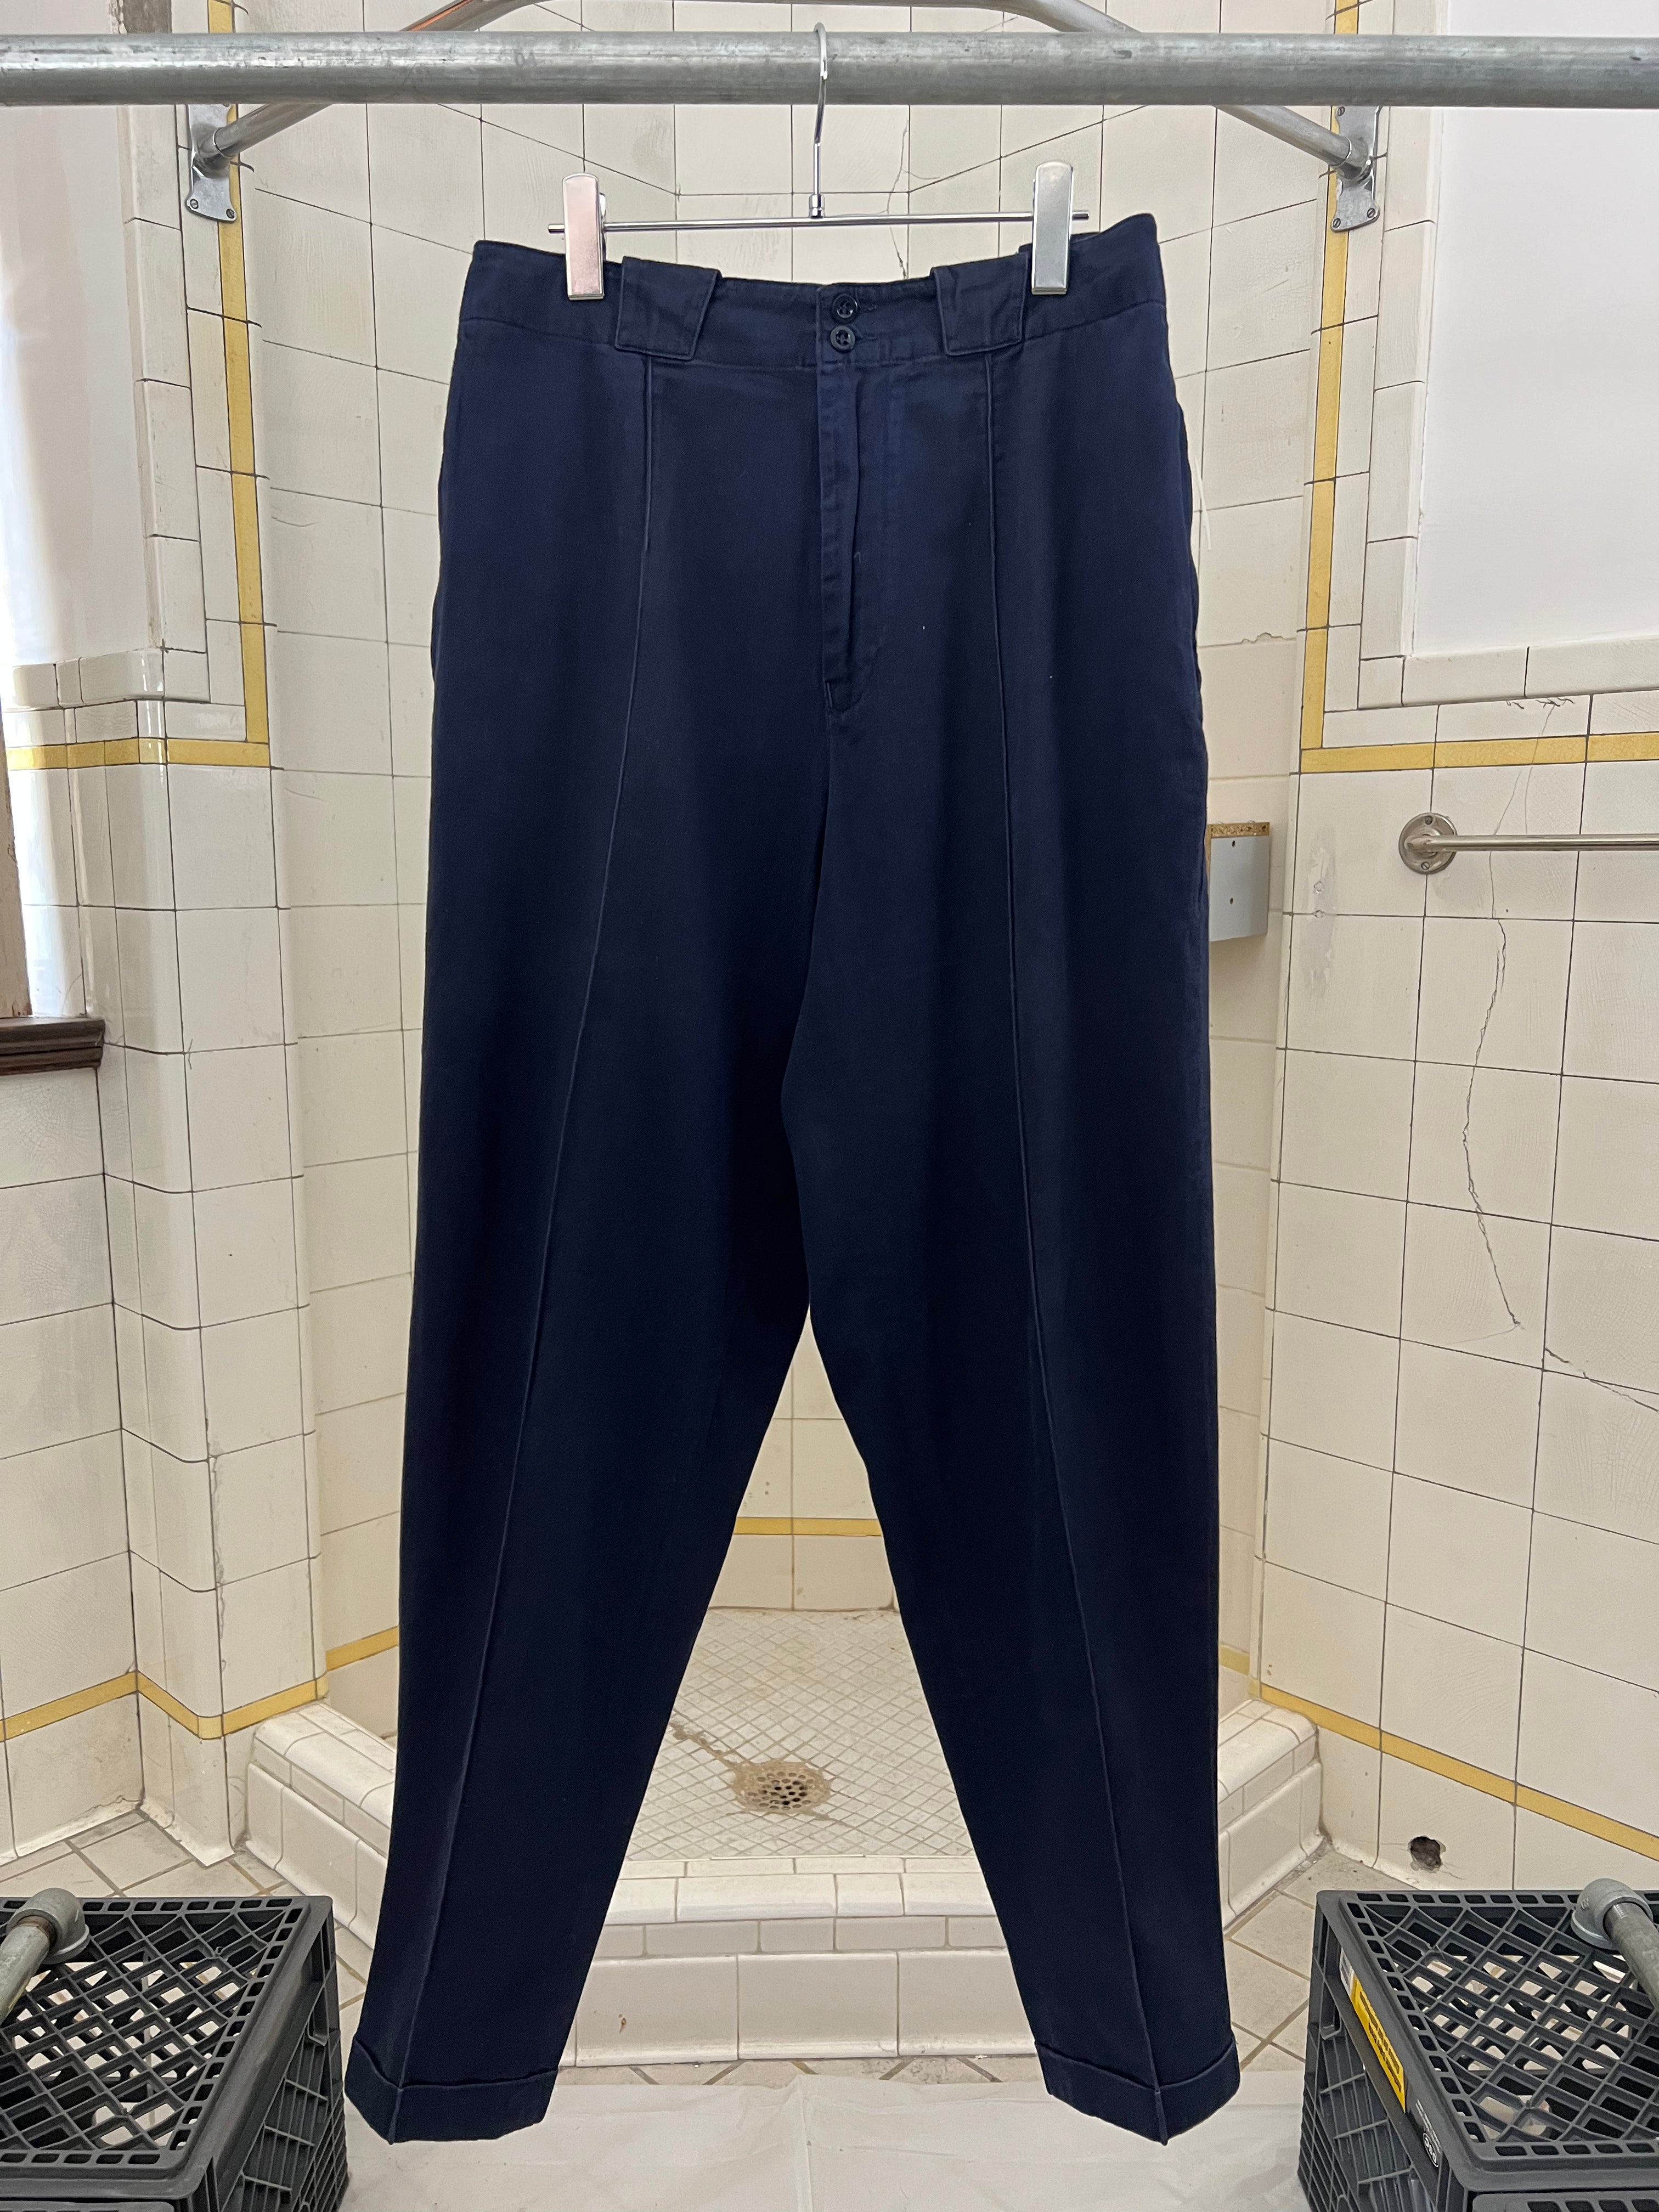 1980s Katharine Hamnett Navy Center Seamed Work Trousers - Size M